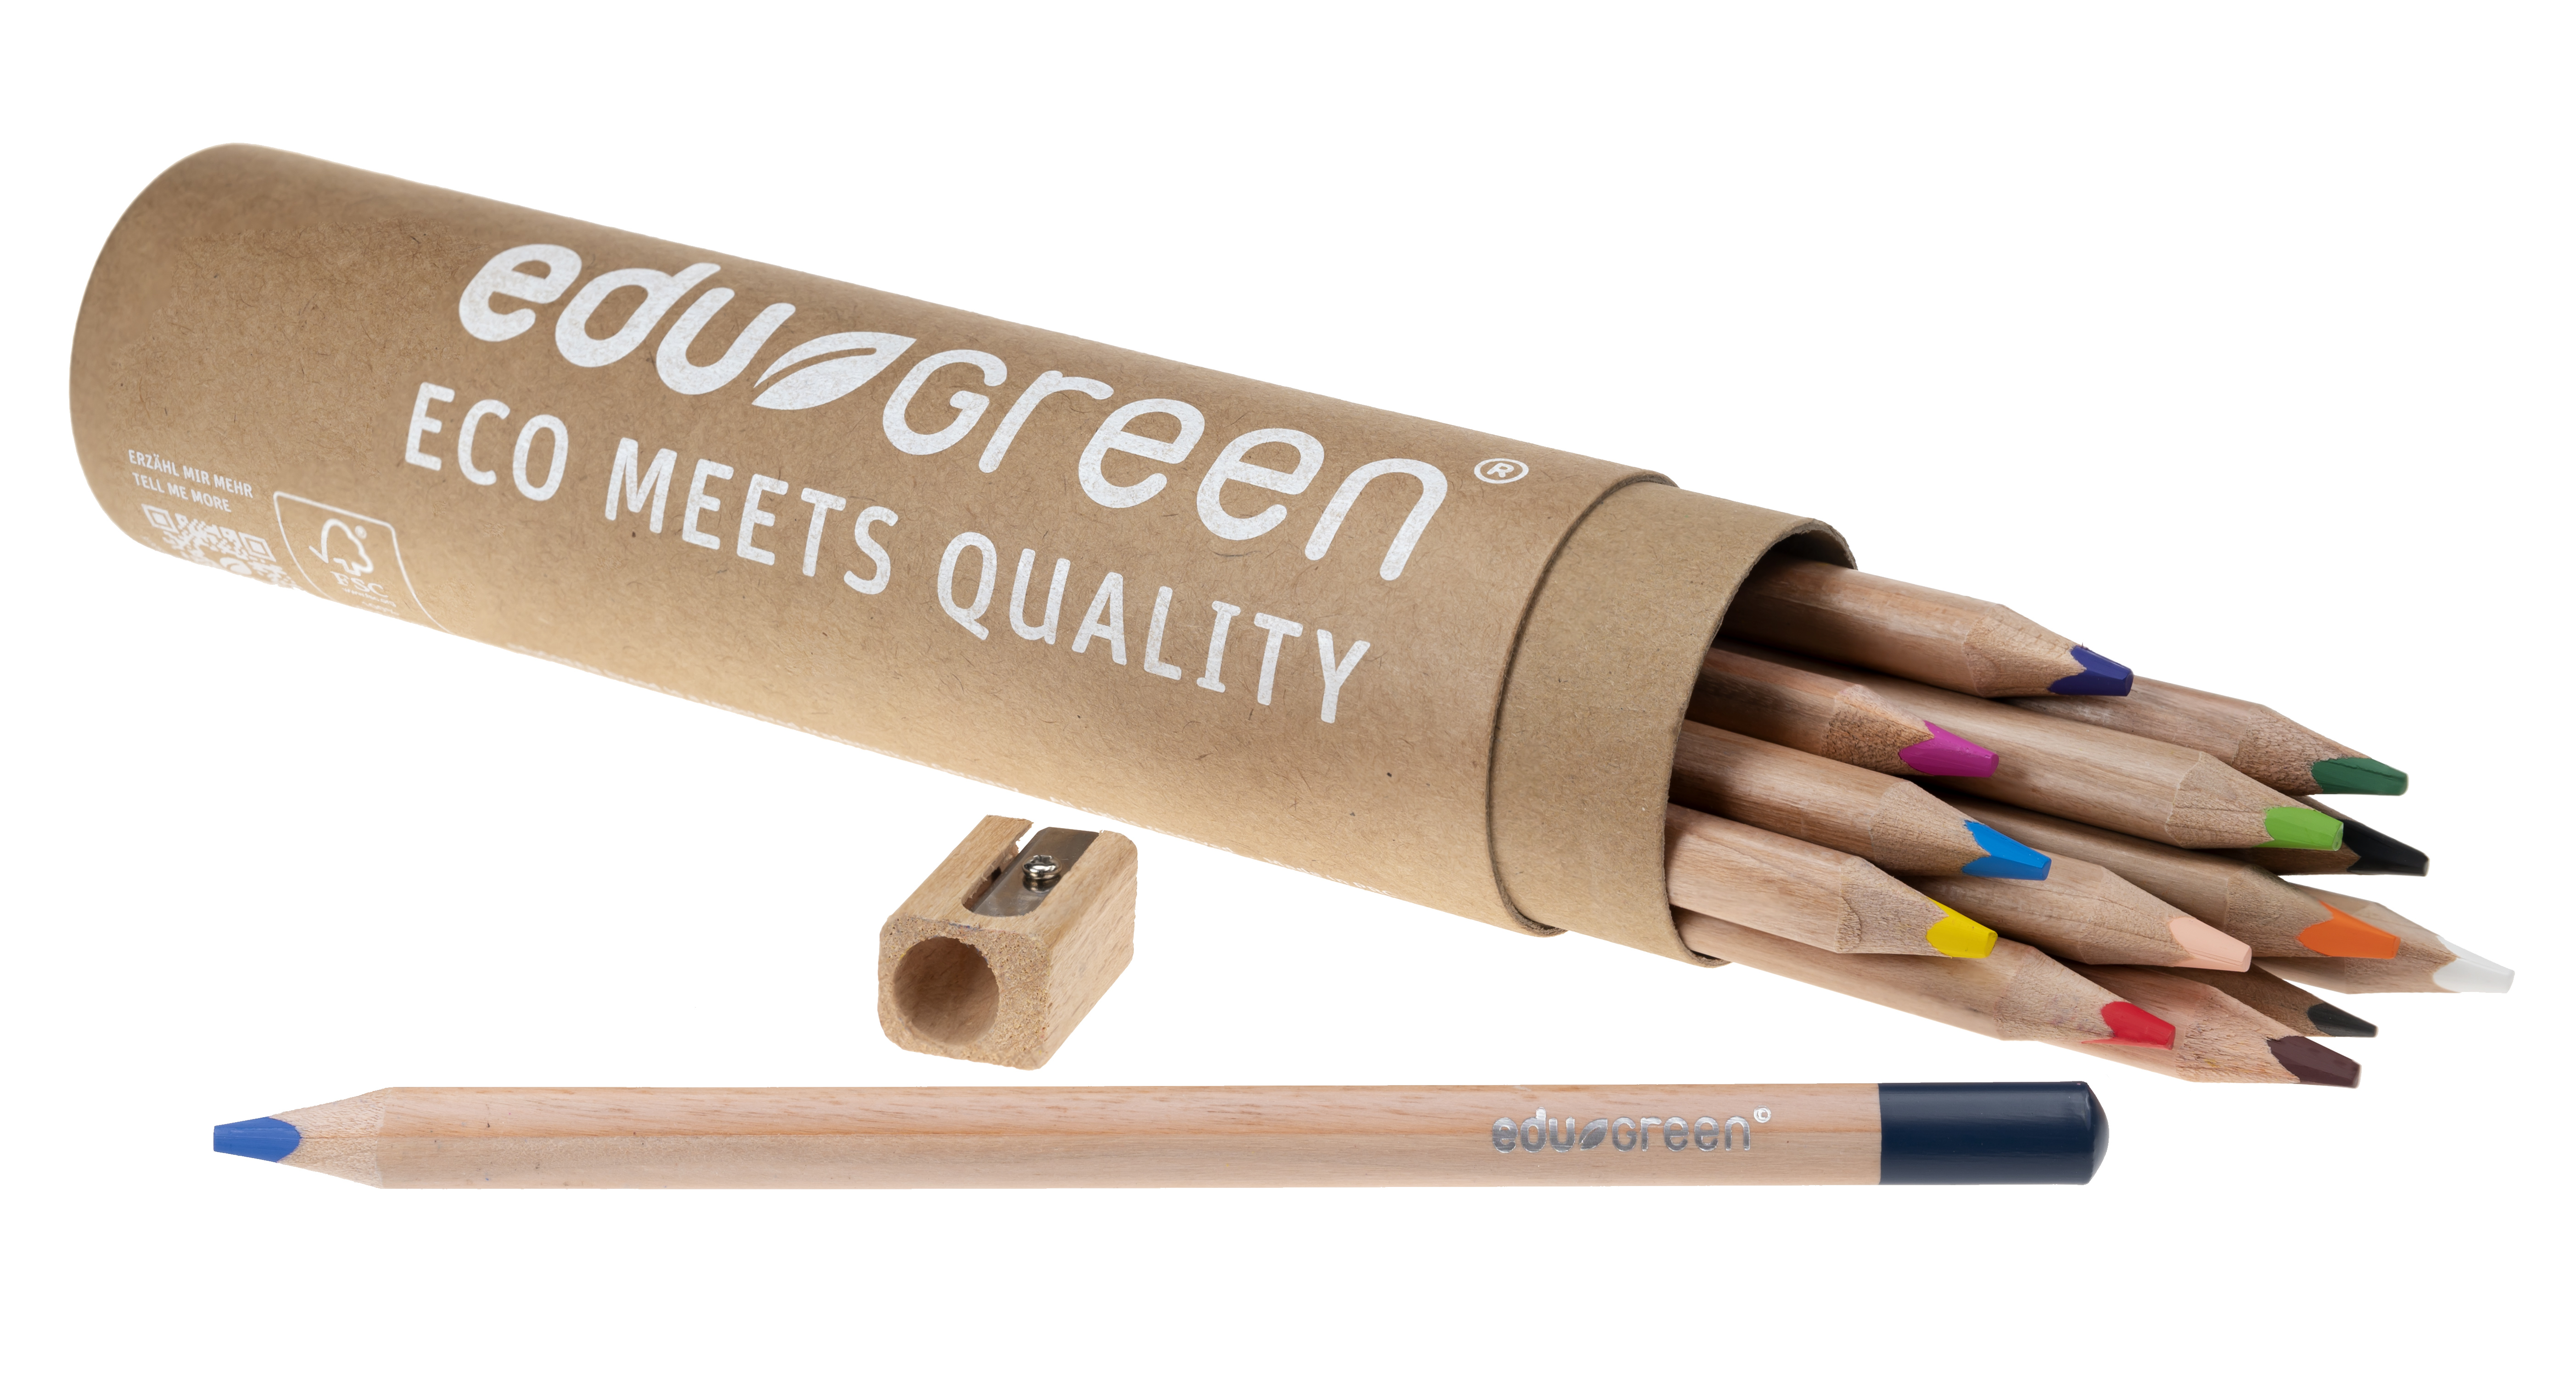 edugreen colored pencil tri round tube